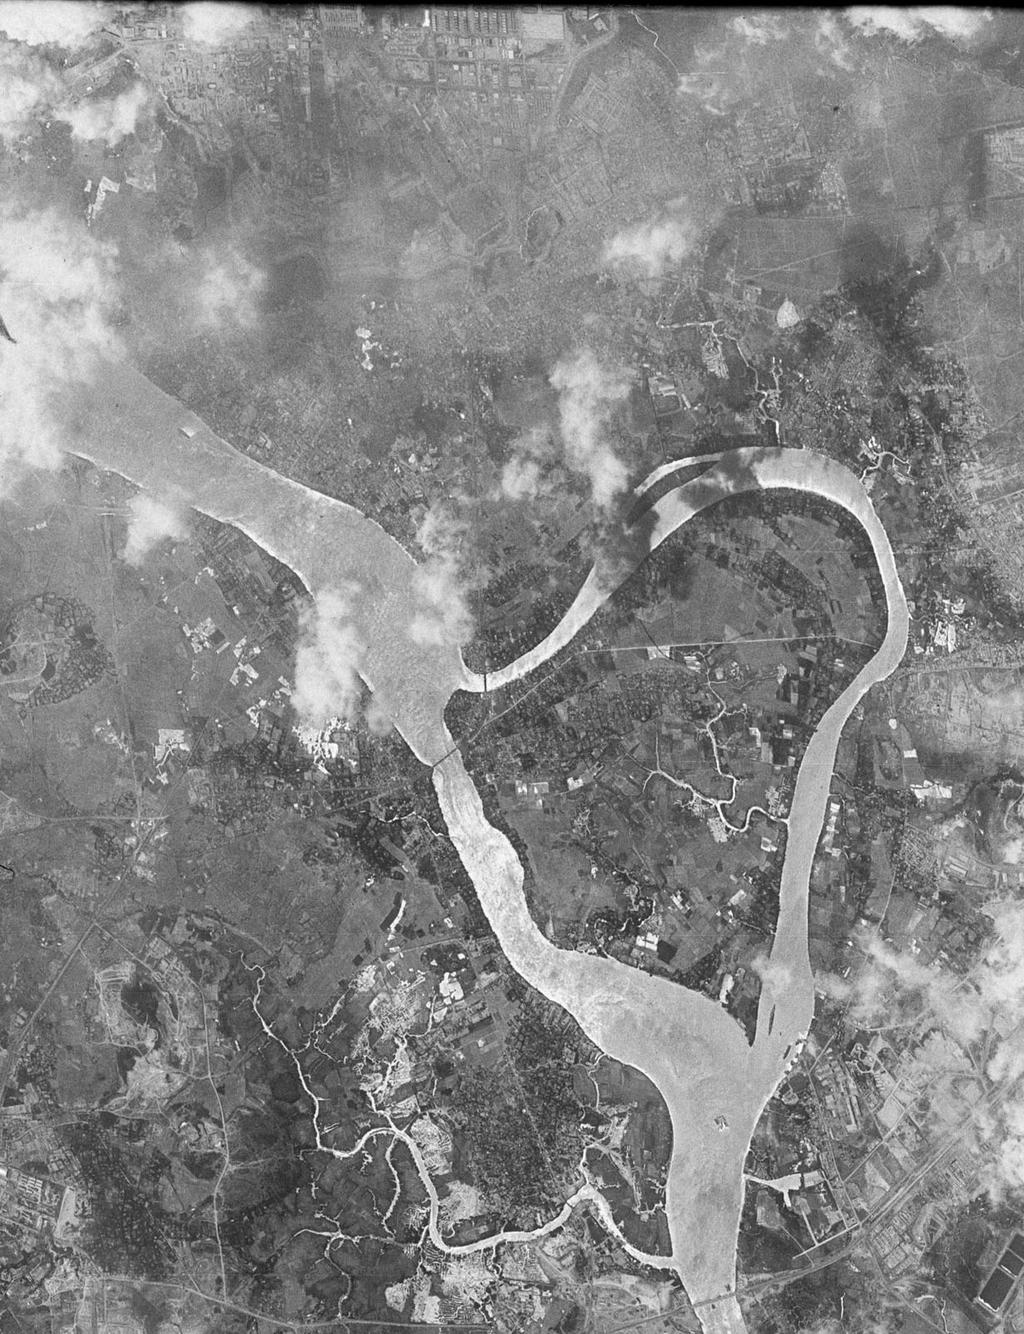 Corona satellite image of